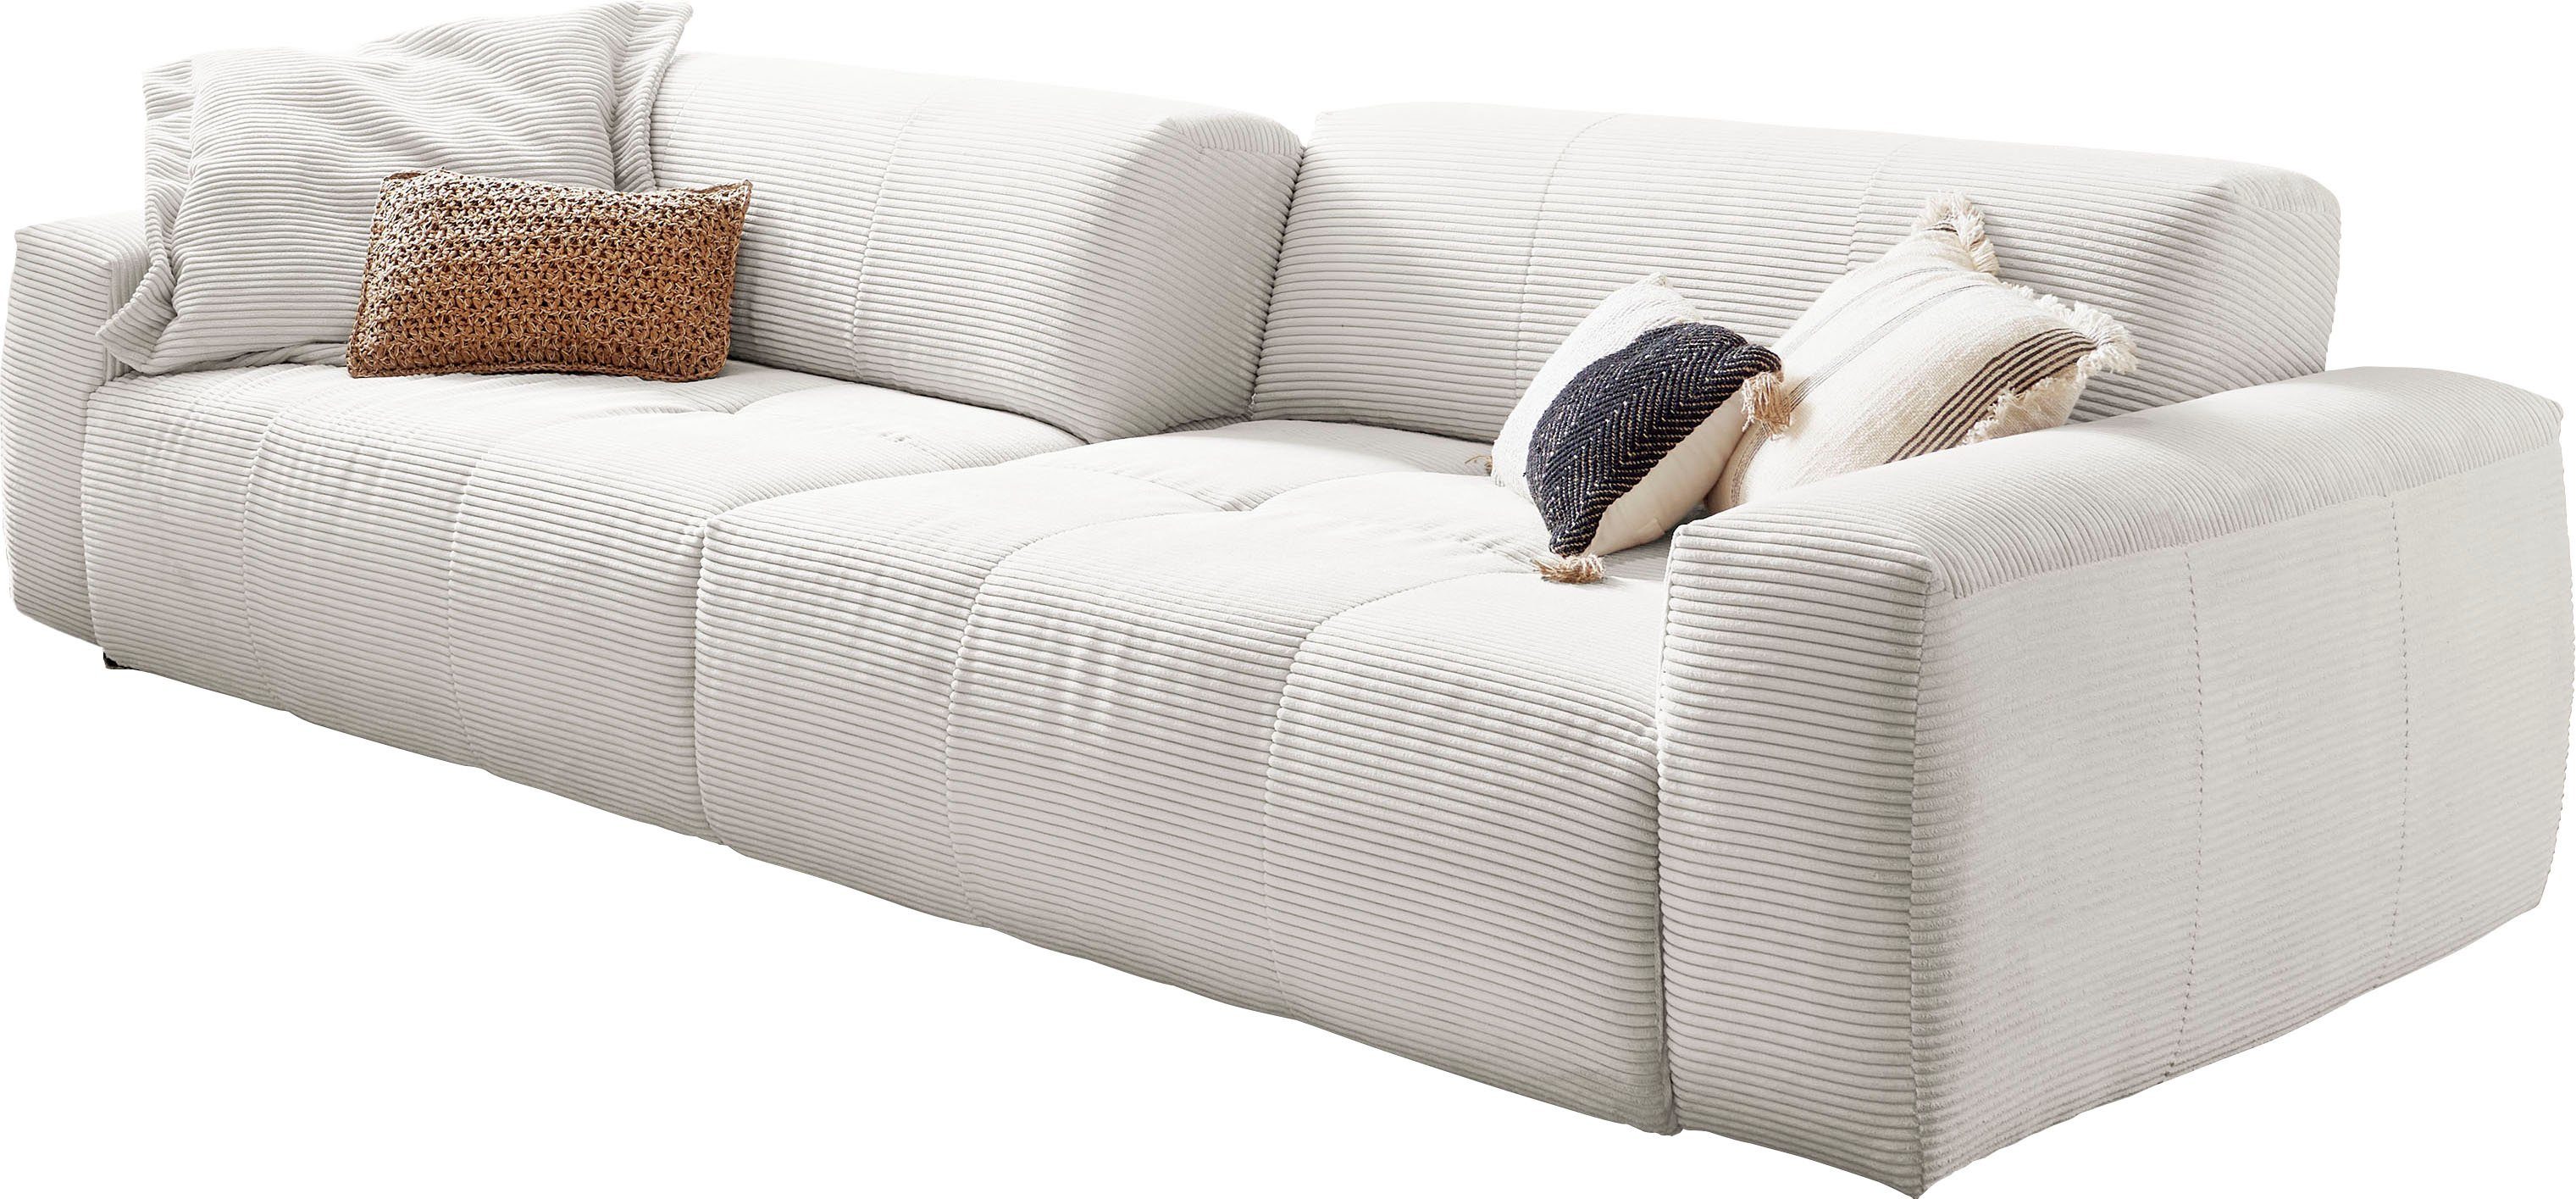 3C Candy Big-Sofa Yoshy, Zwei Sitztiefen durch verstellbare Rückenlehne, Bezug in Cord weiß